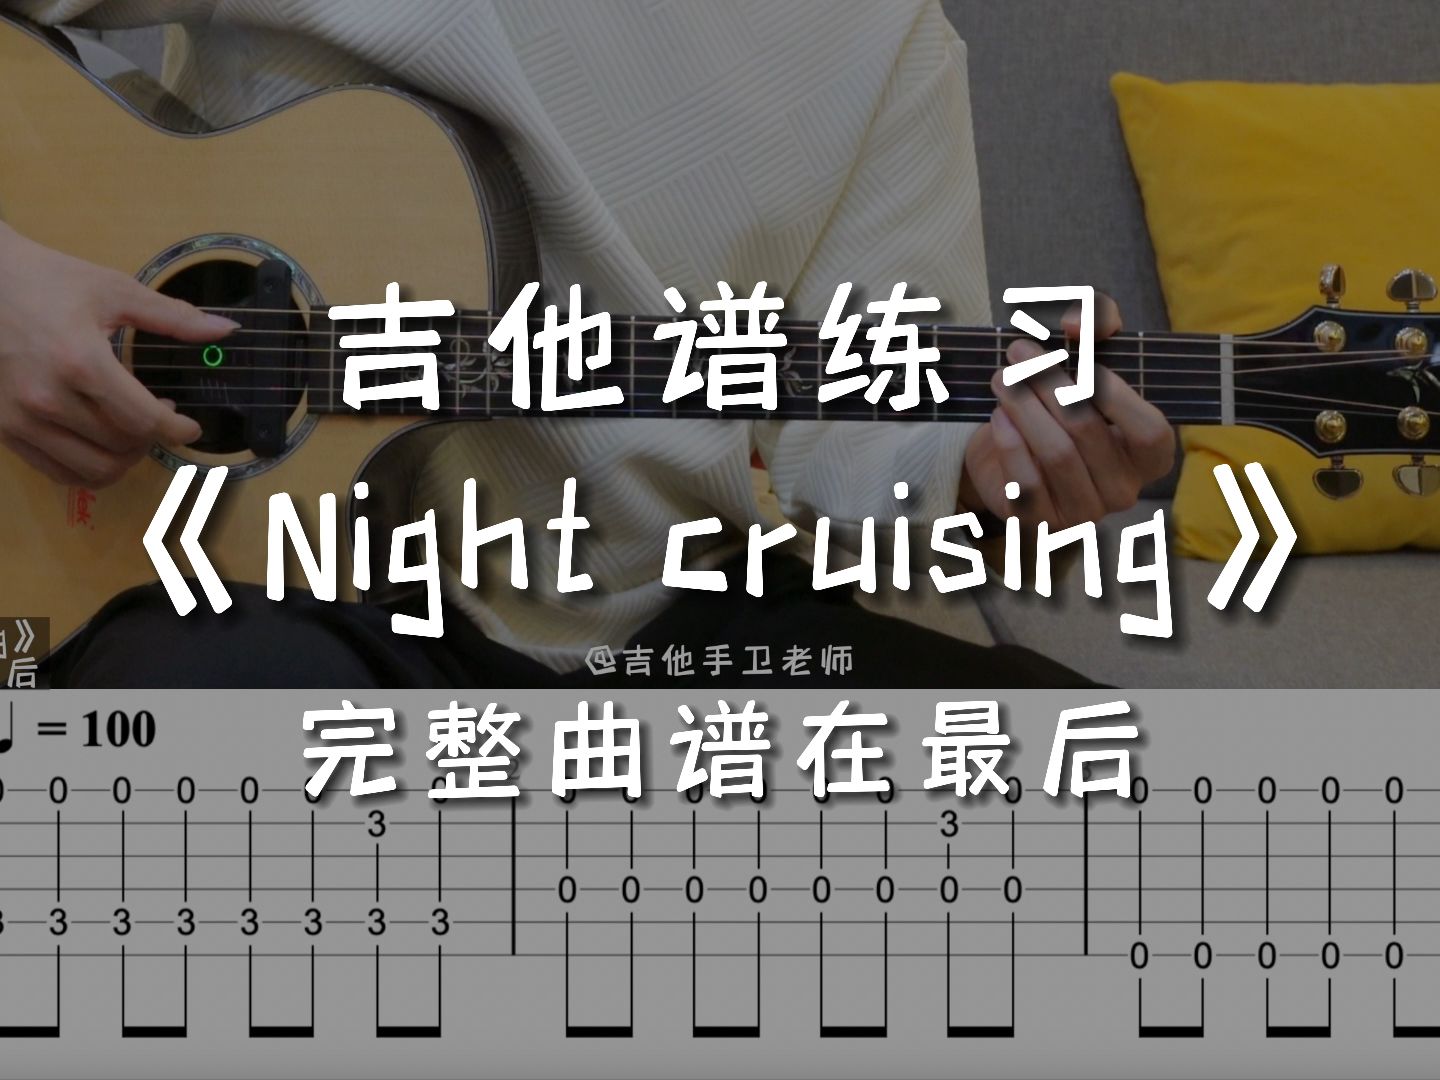 「吉他练习曲」一分钟学吉他《Night cruising》，晚上睡不着，就让思想起飞吧！